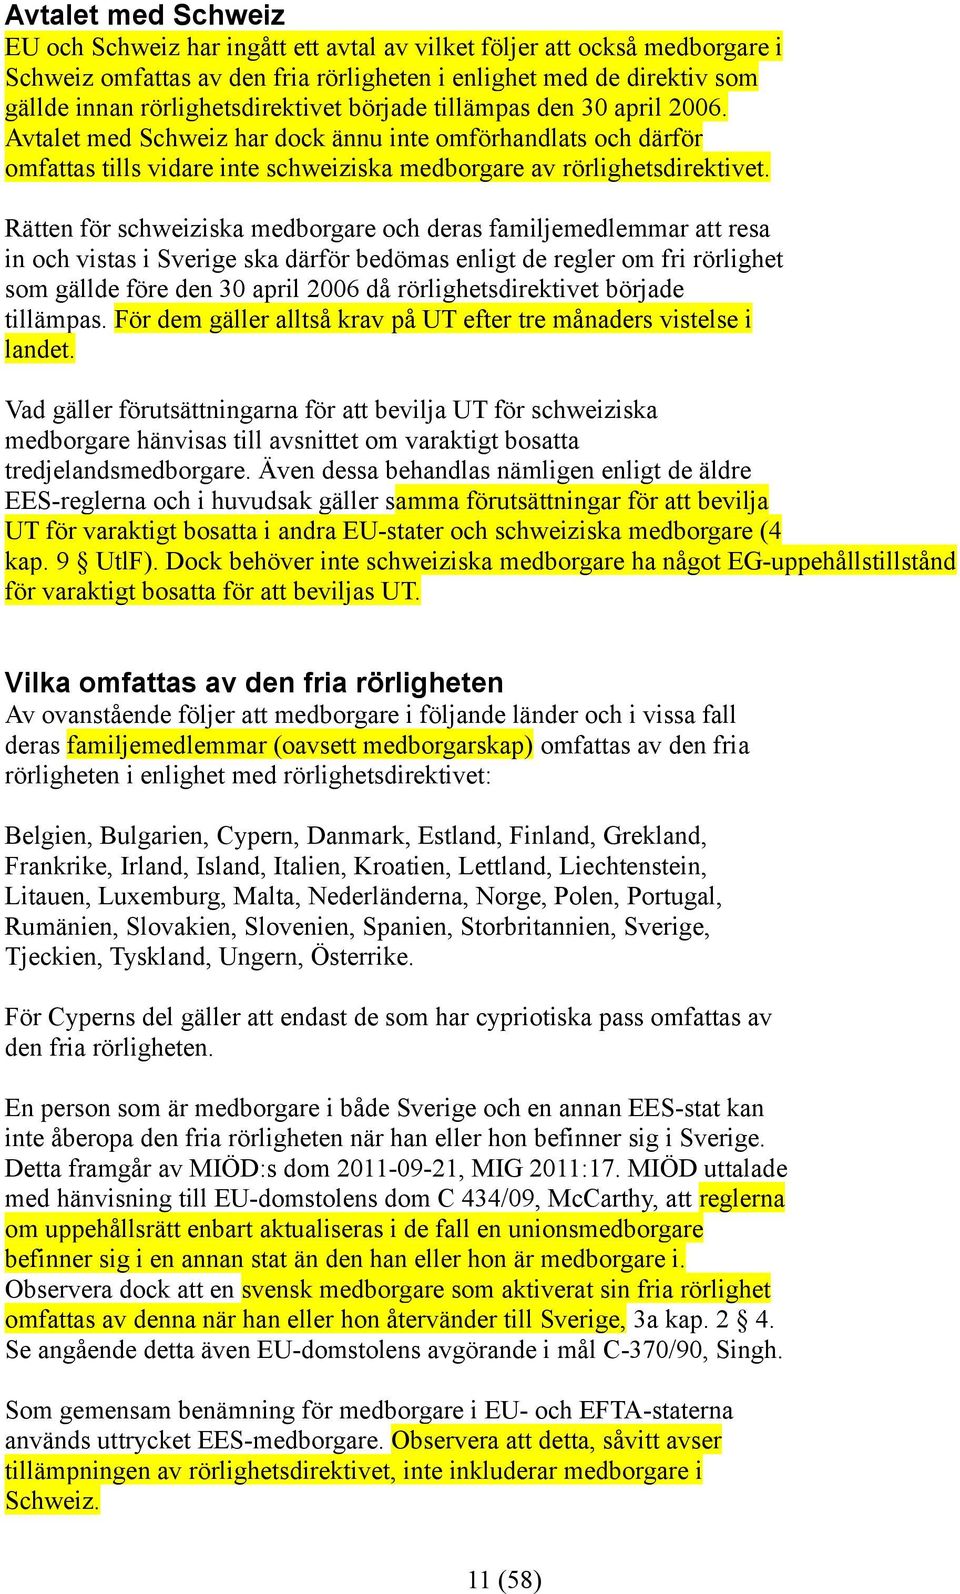 Rätten för schweiziska medborgare och deras familjemedlemmar att resa in och vistas i Sverige ska därför bedömas enligt de regler om fri rörlighet som gällde före den 30 april 2006 då